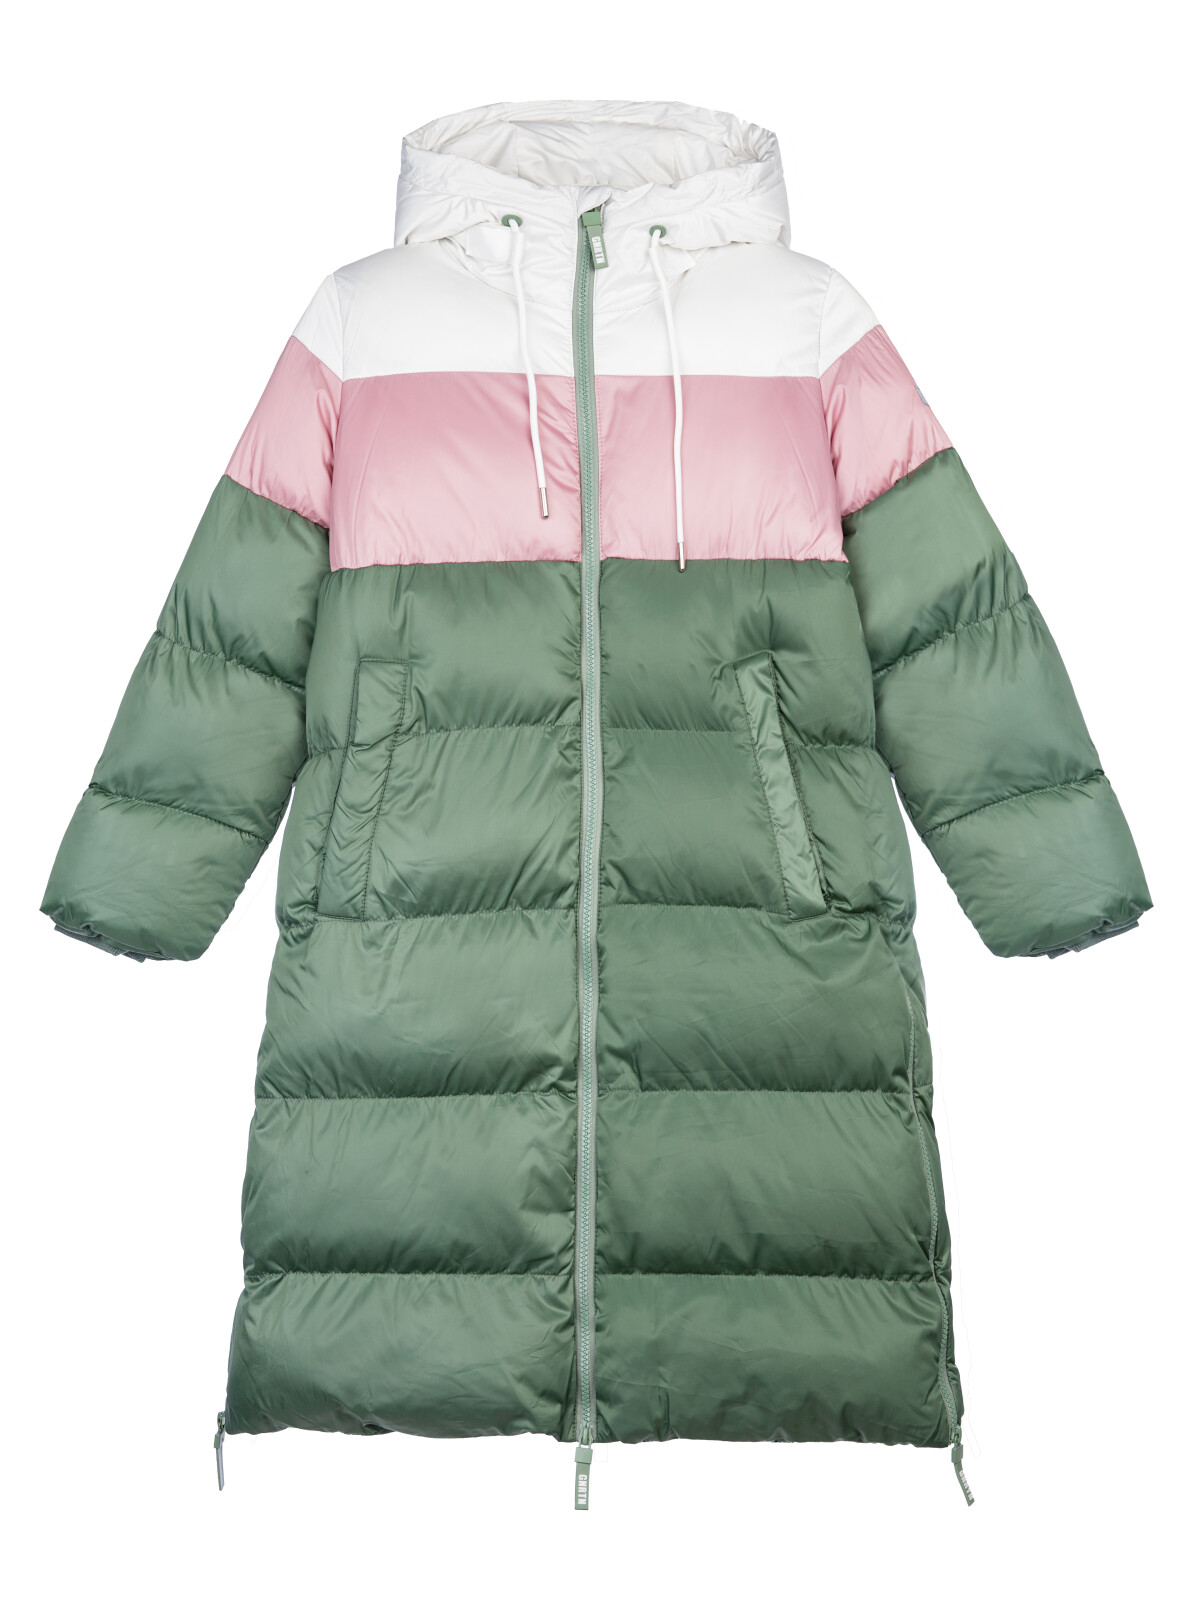 Пальто текстильное для девочек PlayToday, серебро,коричневый,темно-зеленый, 134